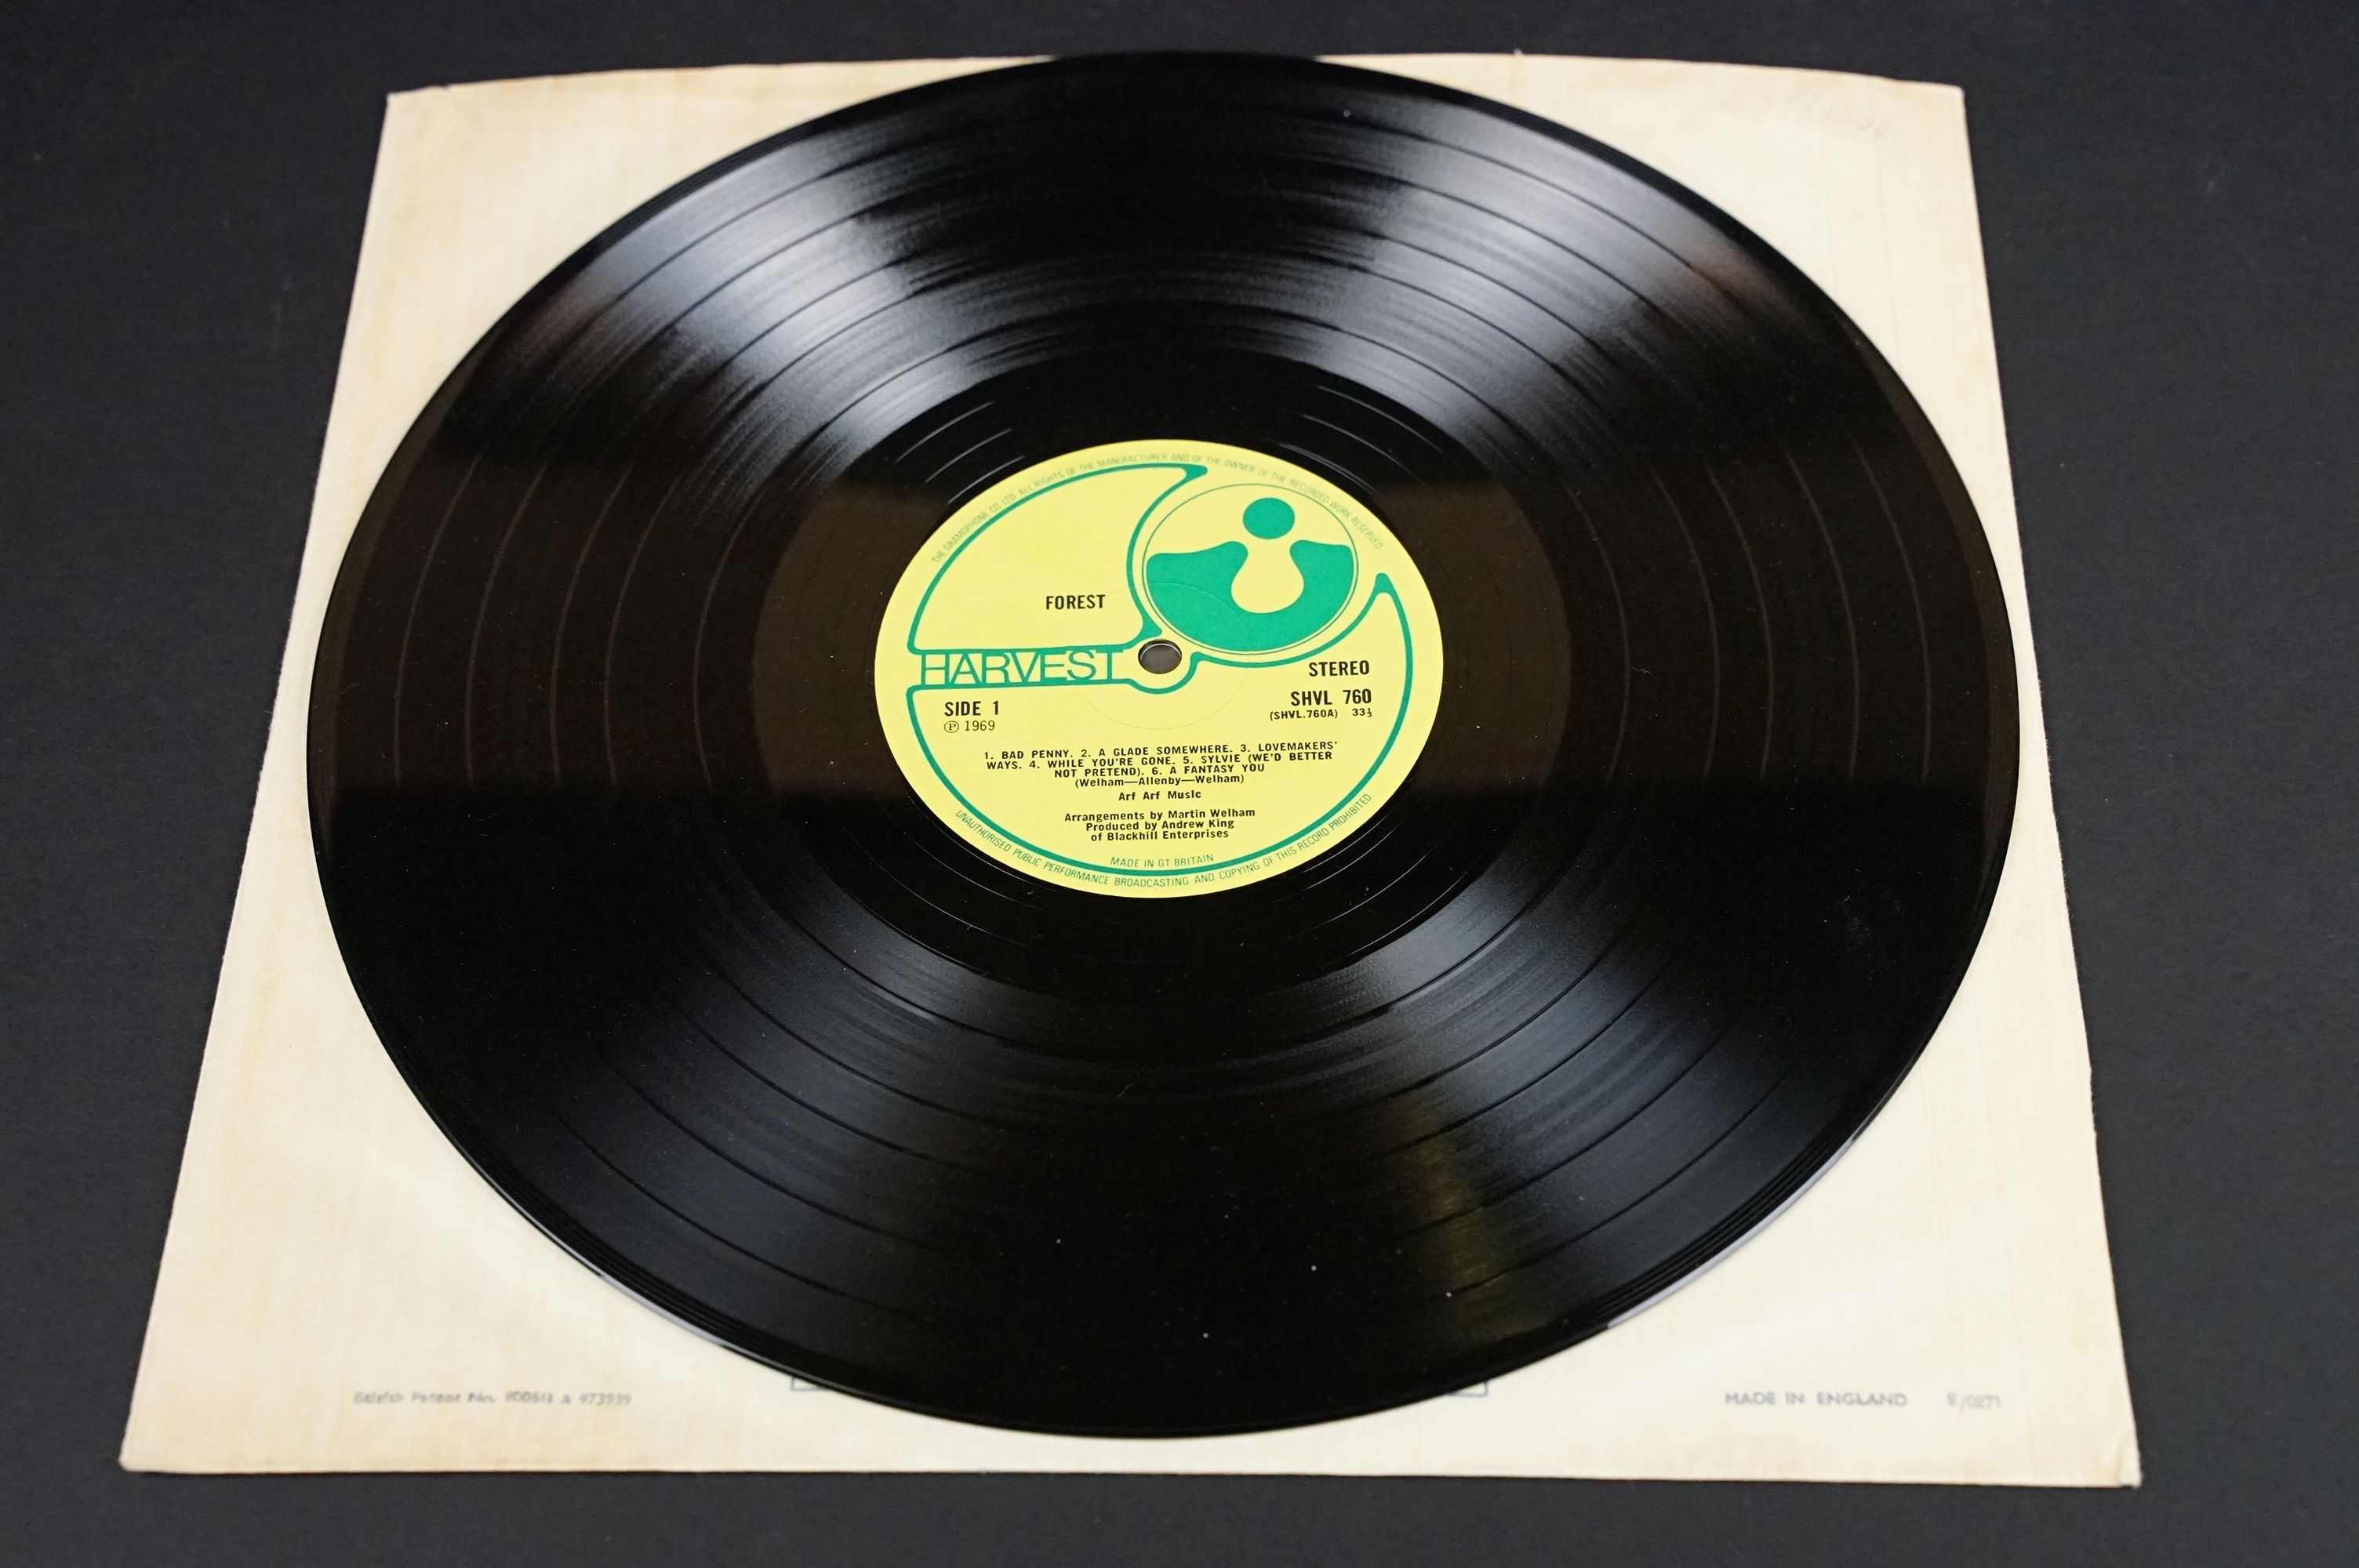 Vinyl - Forest self titled LP on Harvest Records SHVL 760. Original UK 1st pressing, no EMI on - Image 3 of 7